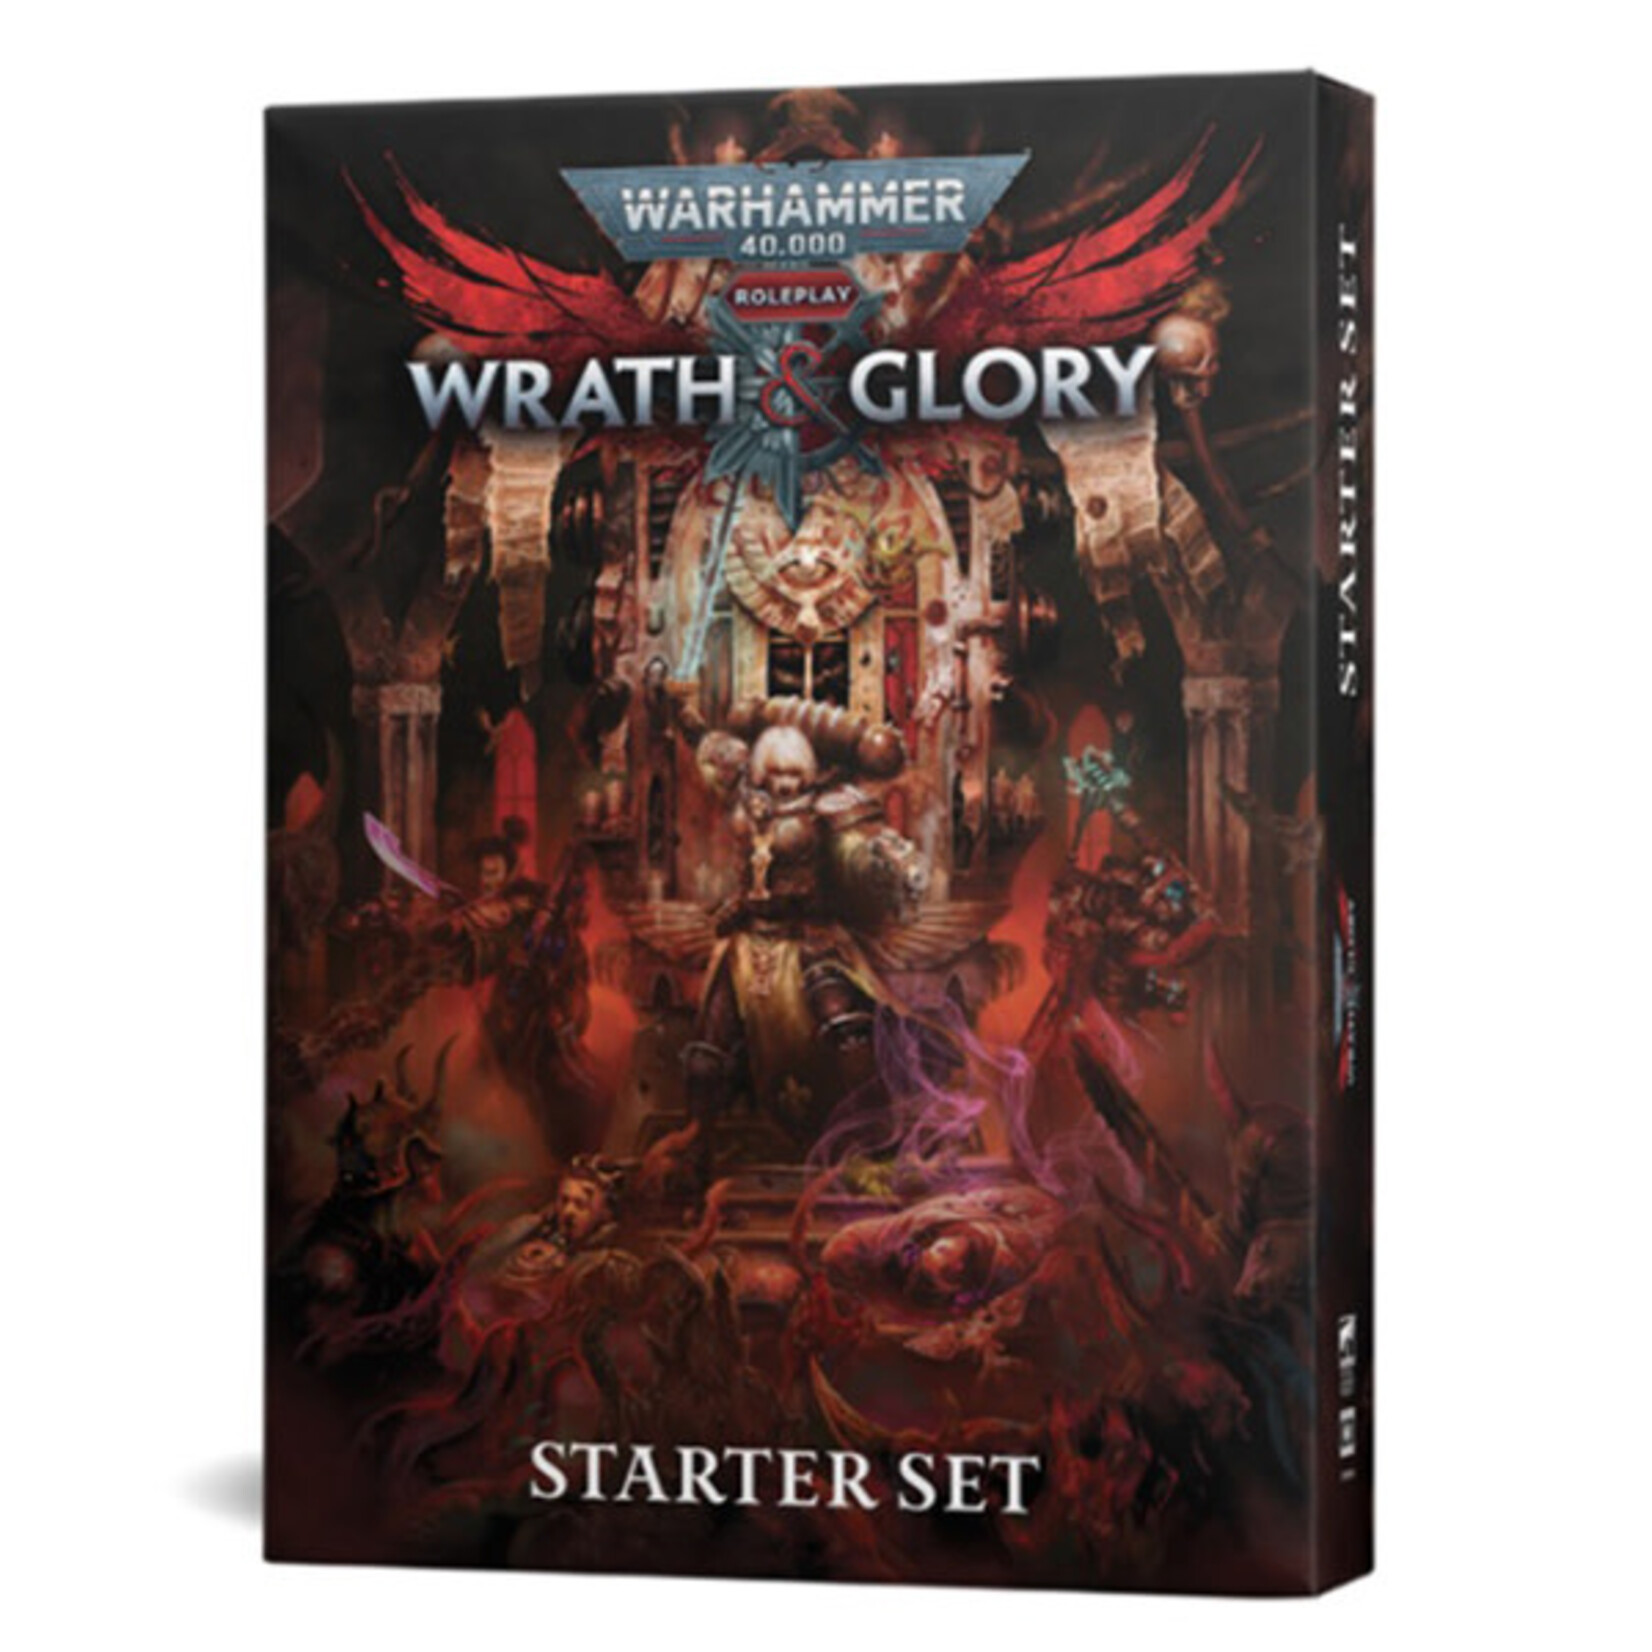 Cubicle 7 Warhammer 40K Wrath & Glory RPG Starter Set